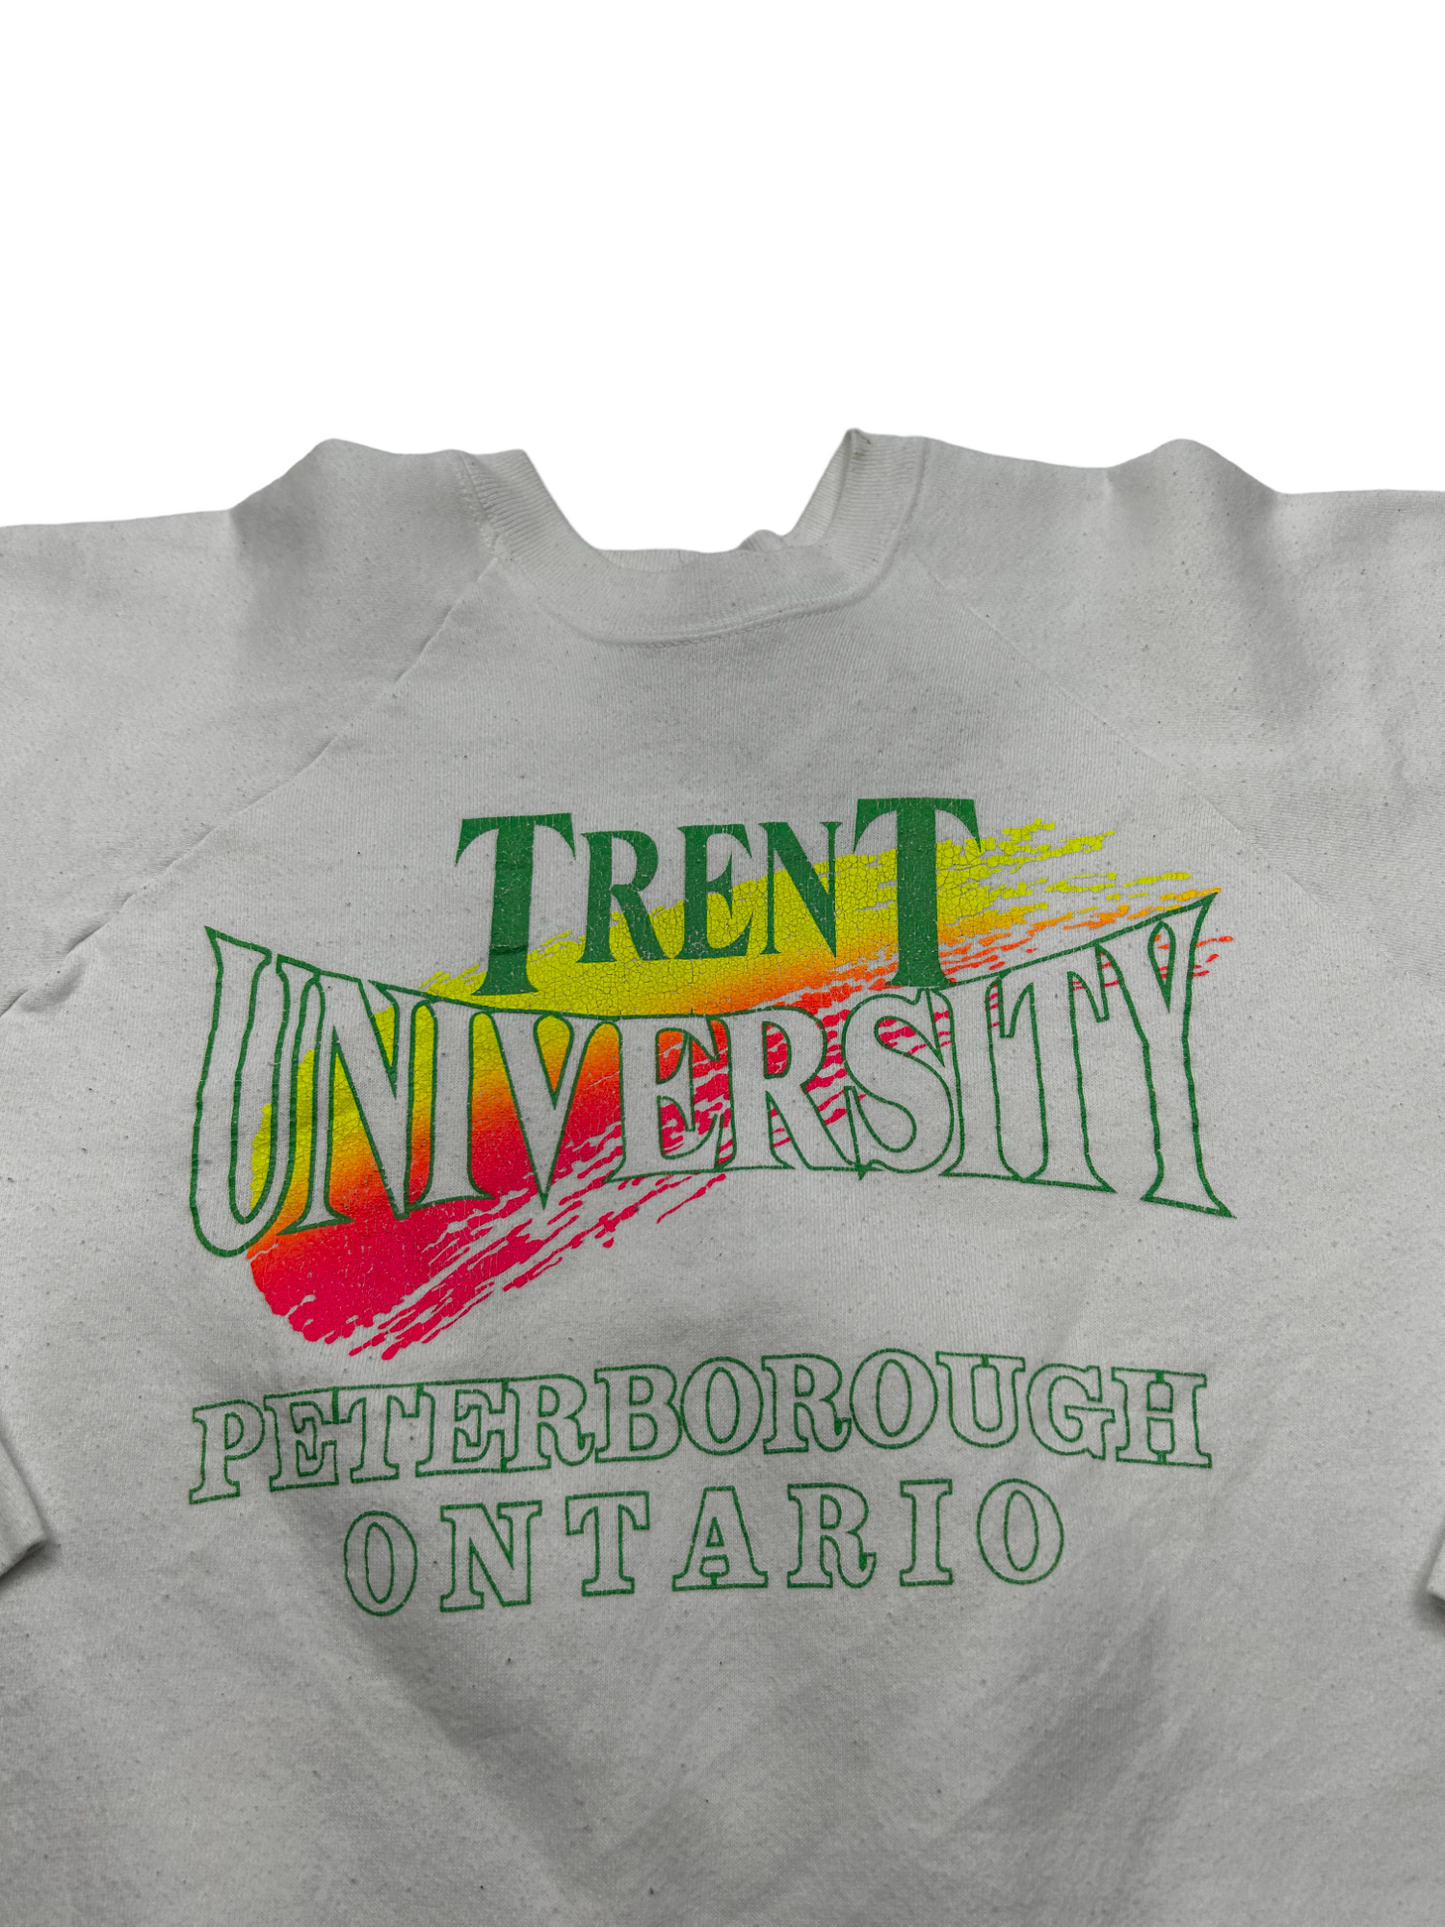 Trent University Crewneck